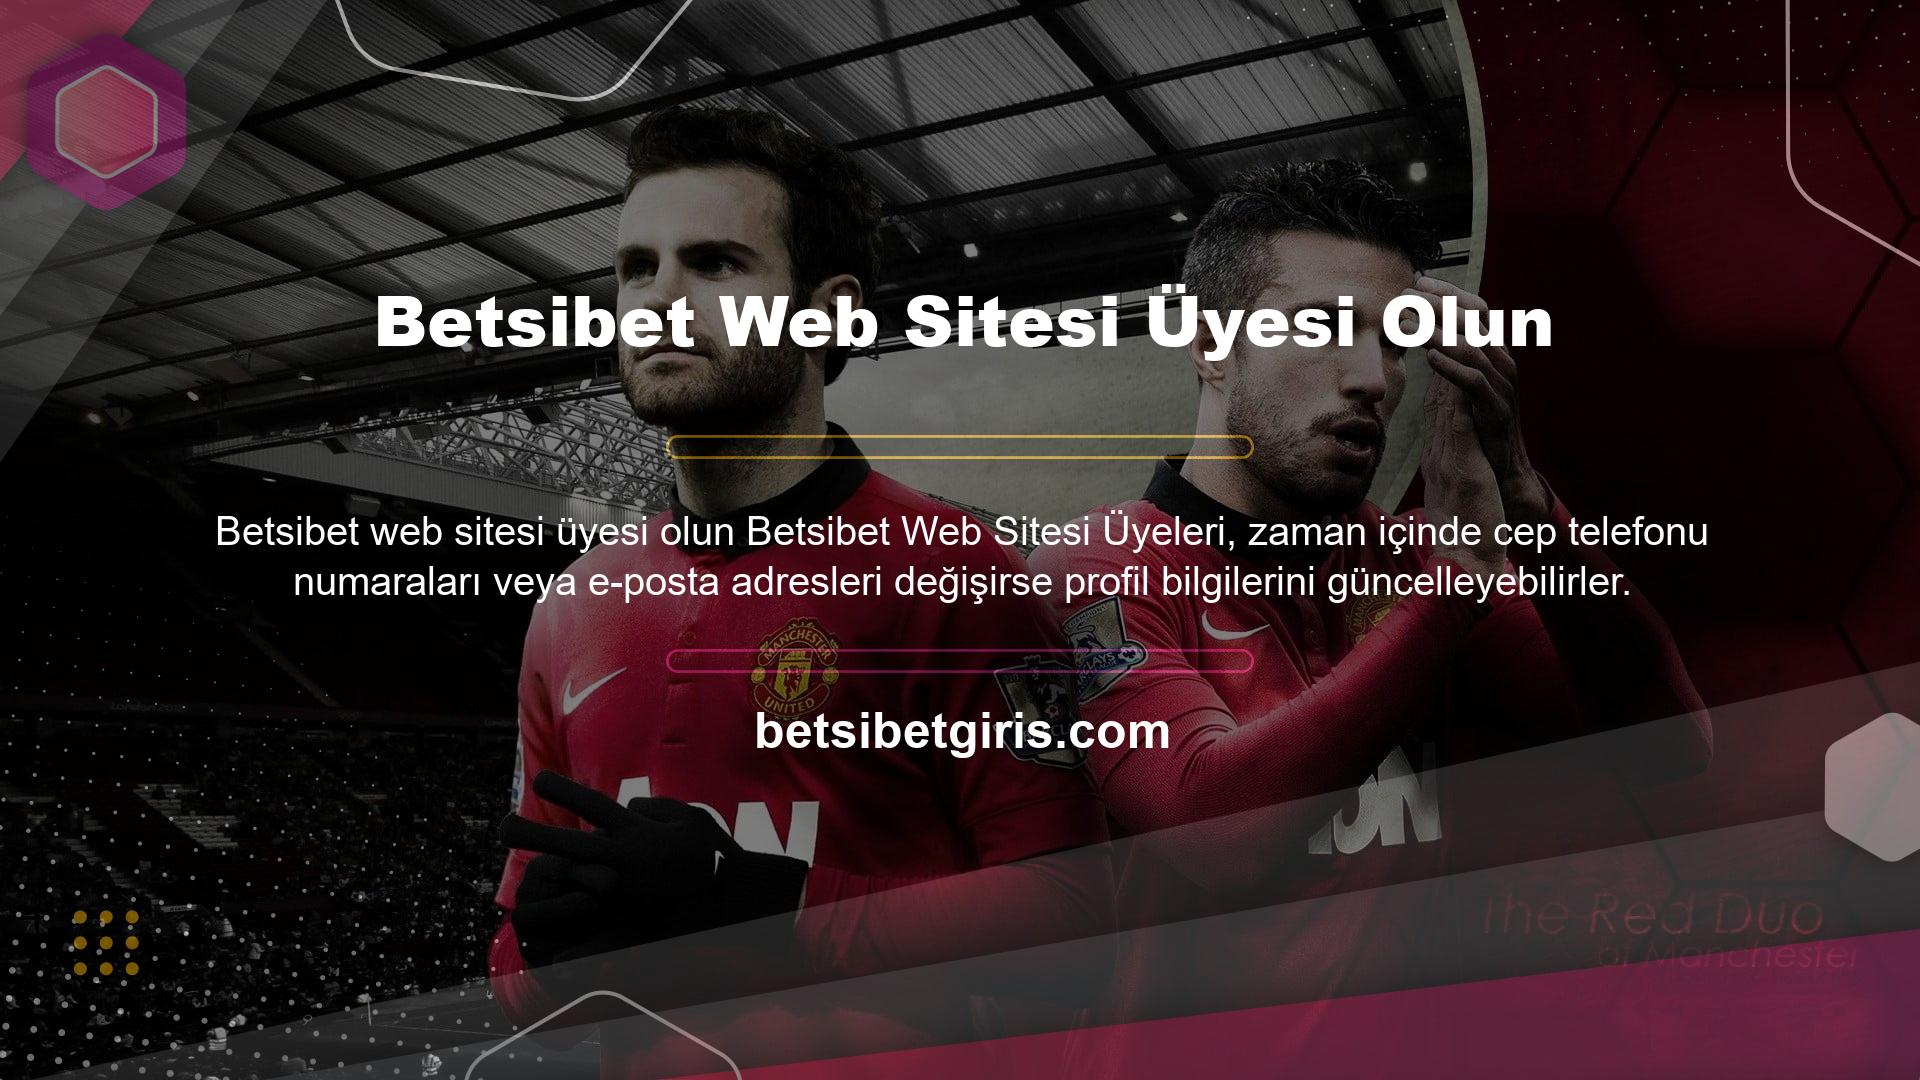 Bu, Betsibet web sitesindeki üyelik bilgilerinizi değiştiğinde güncellemenize olanak sağlar